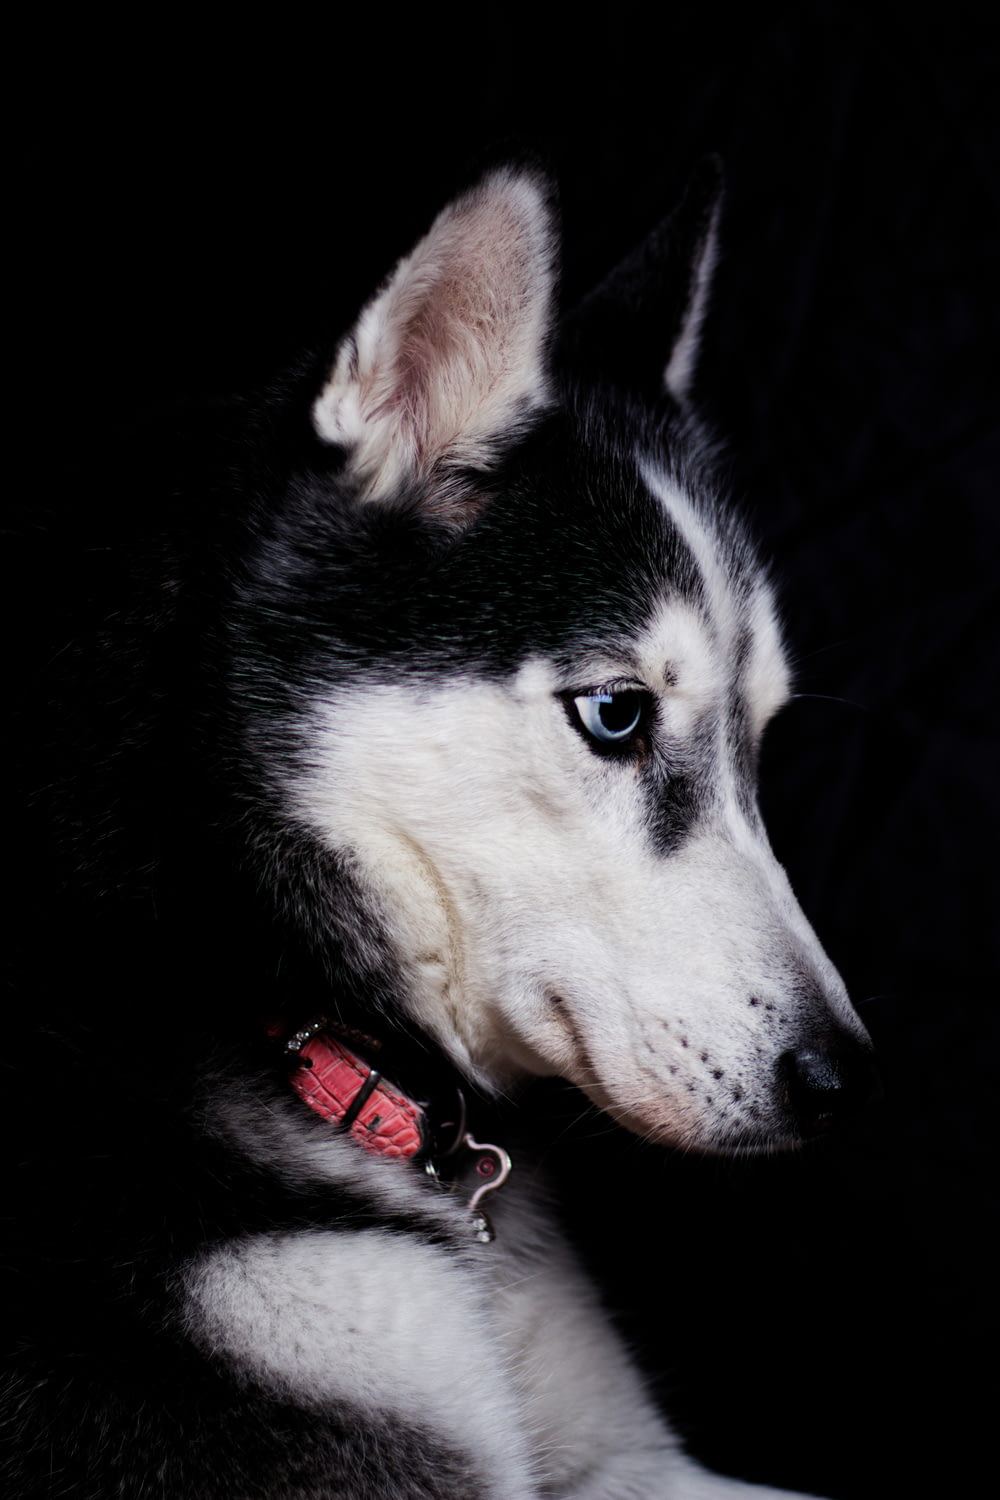 fotografia em close-up de husky siberiano preto e branco